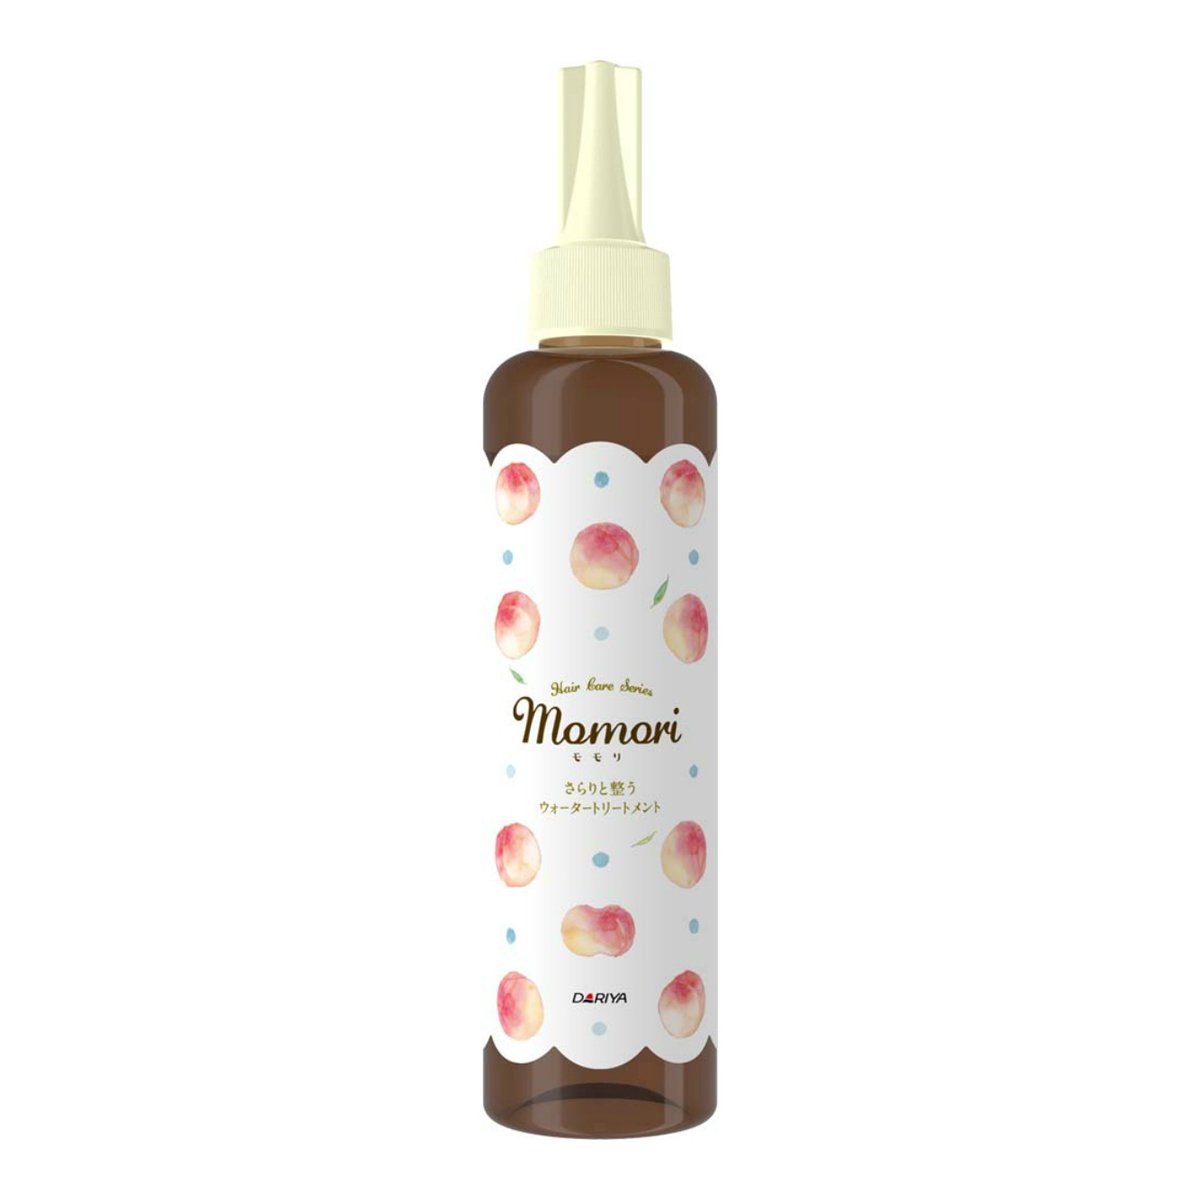 Momori Peach 10 Second Care Refreshing Water Hair Treatment 190ml